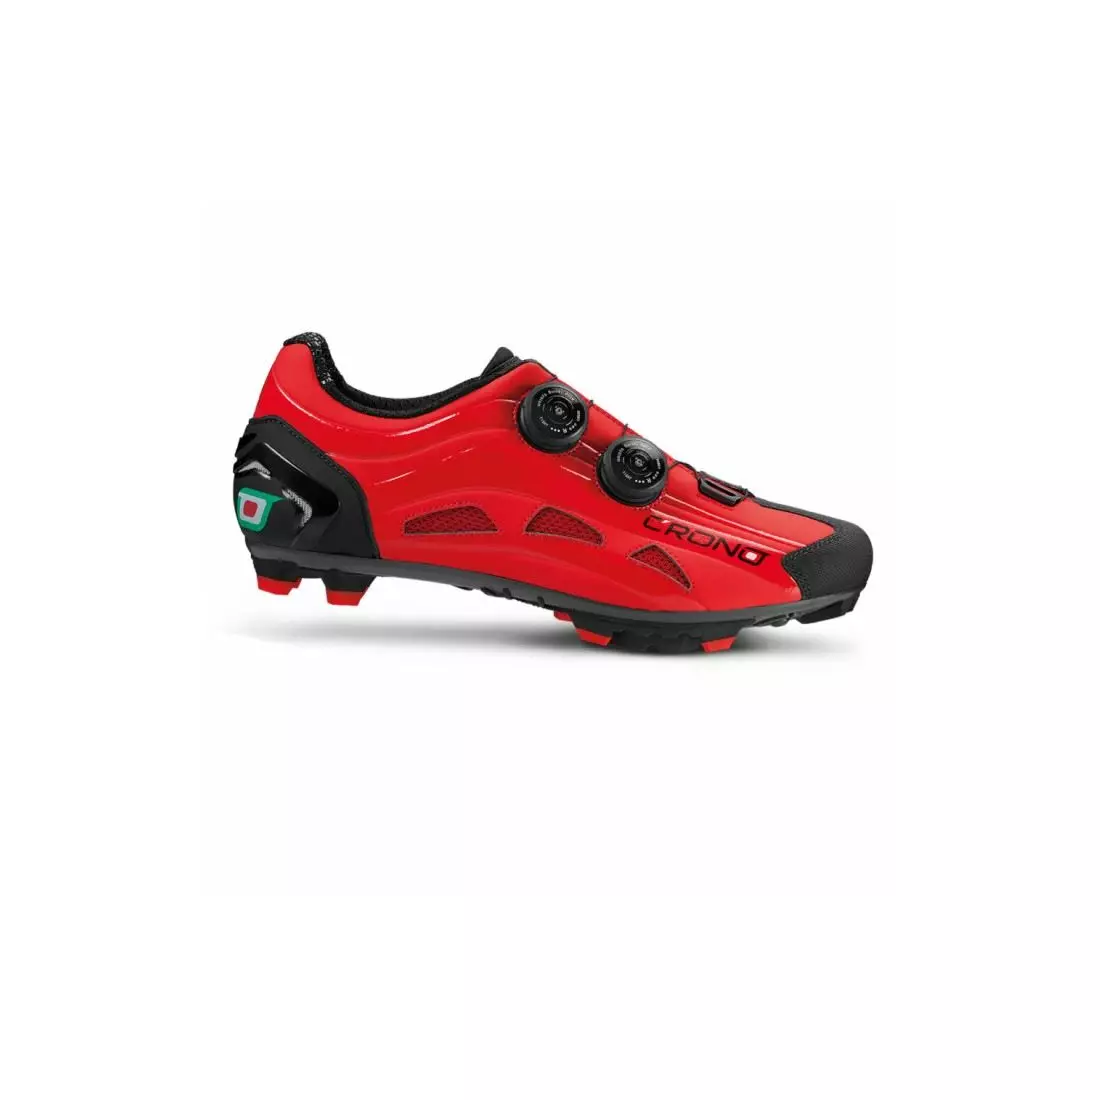 CRONO MTB EXTREMA 2 NEW férfi MTB kerékpáros cipő, nylon red 